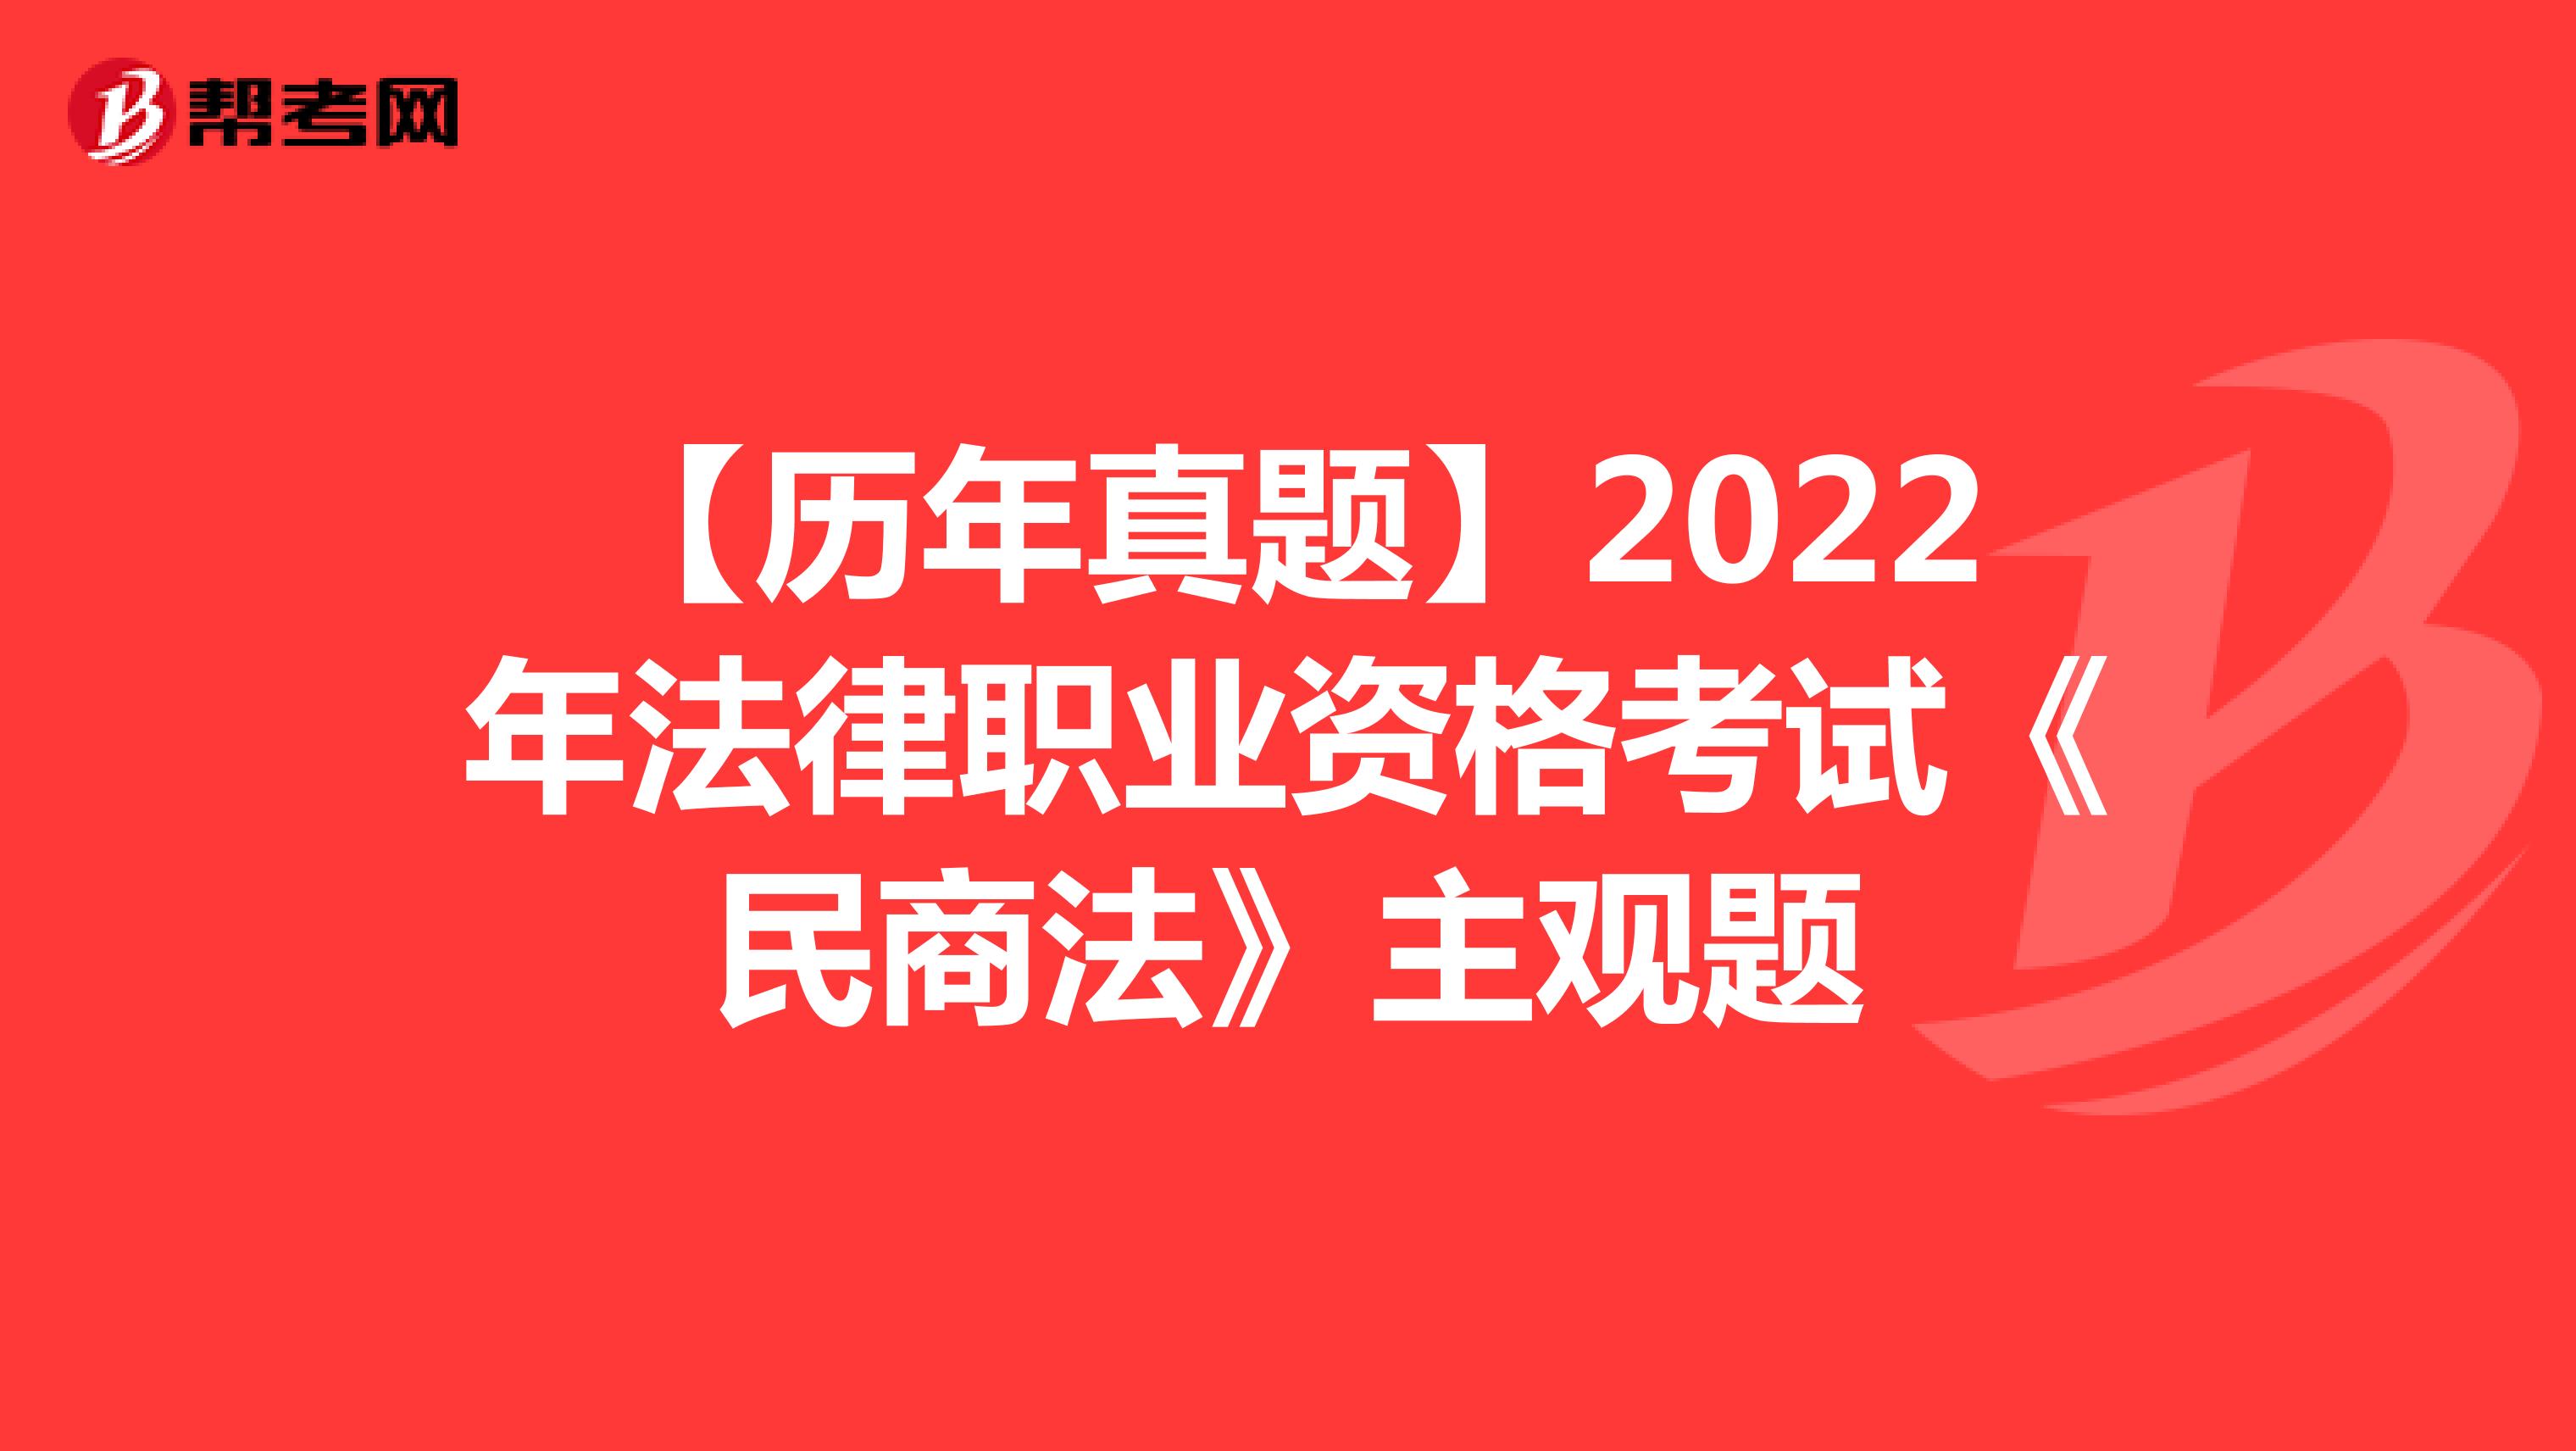 【历年真题】2022年法律职业资格考试《民商法》主观题